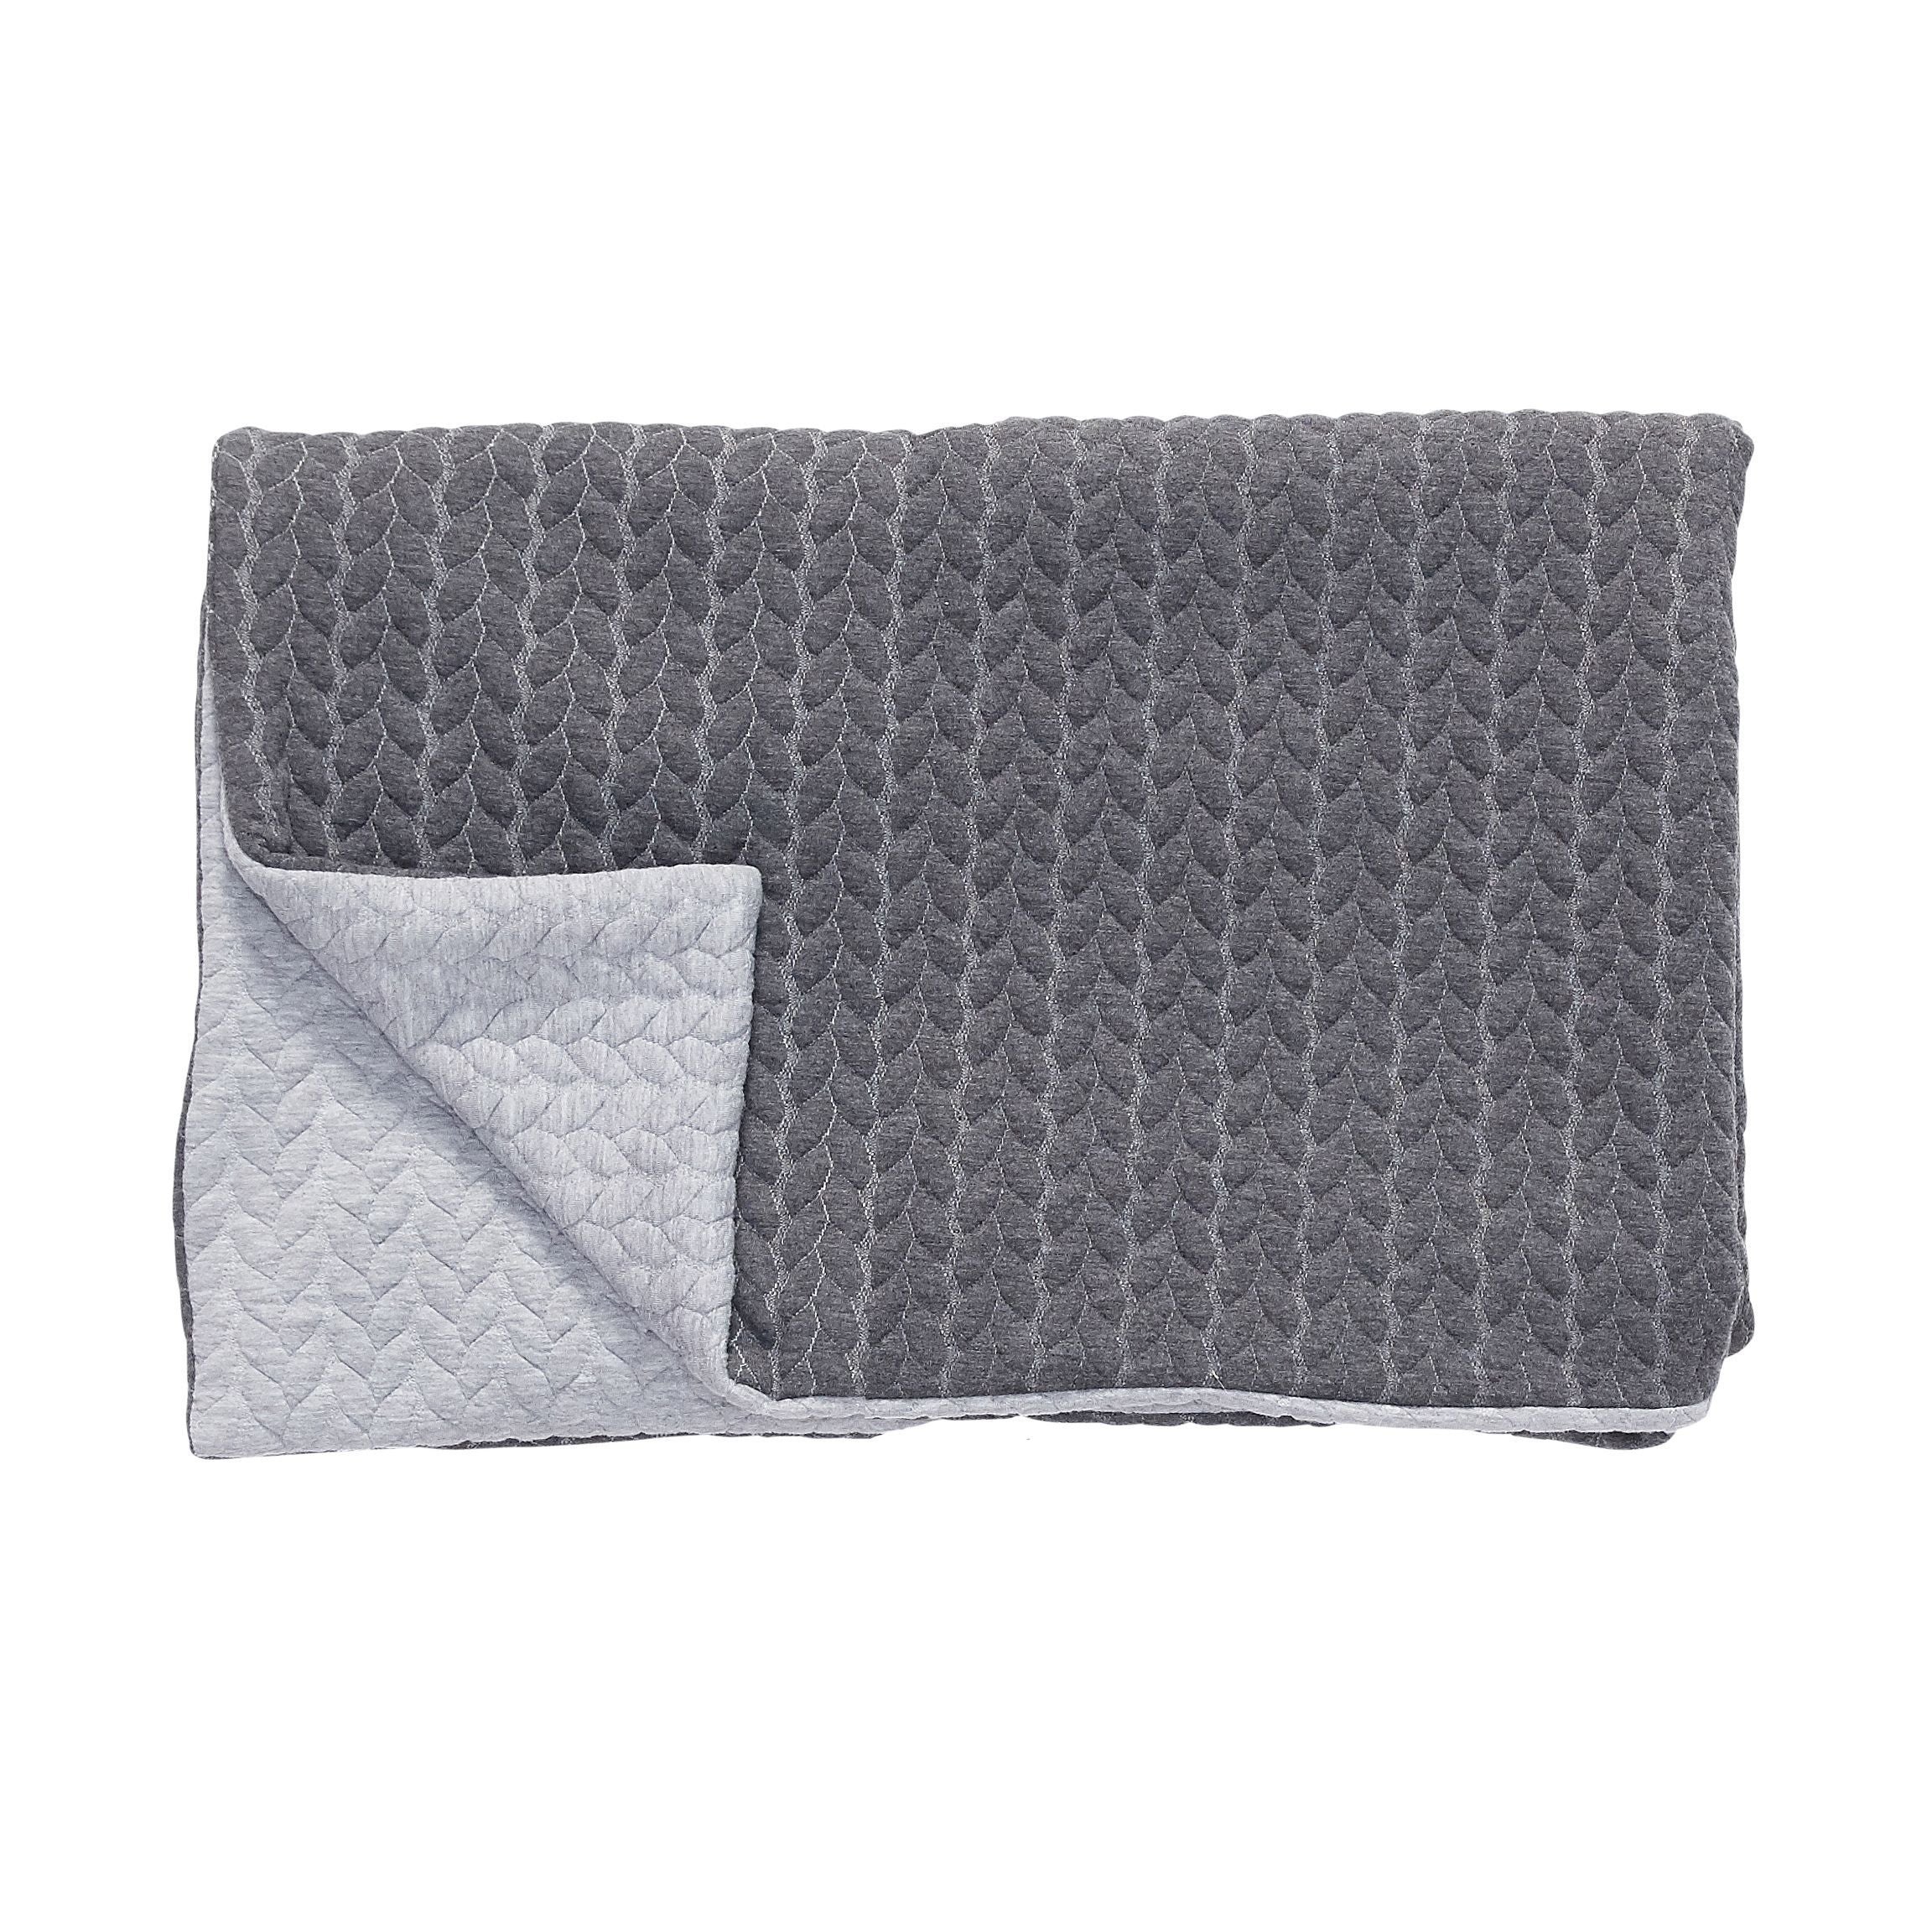 Hübsch Plaid Blanket M Pattern Dark Grey/Light Grey